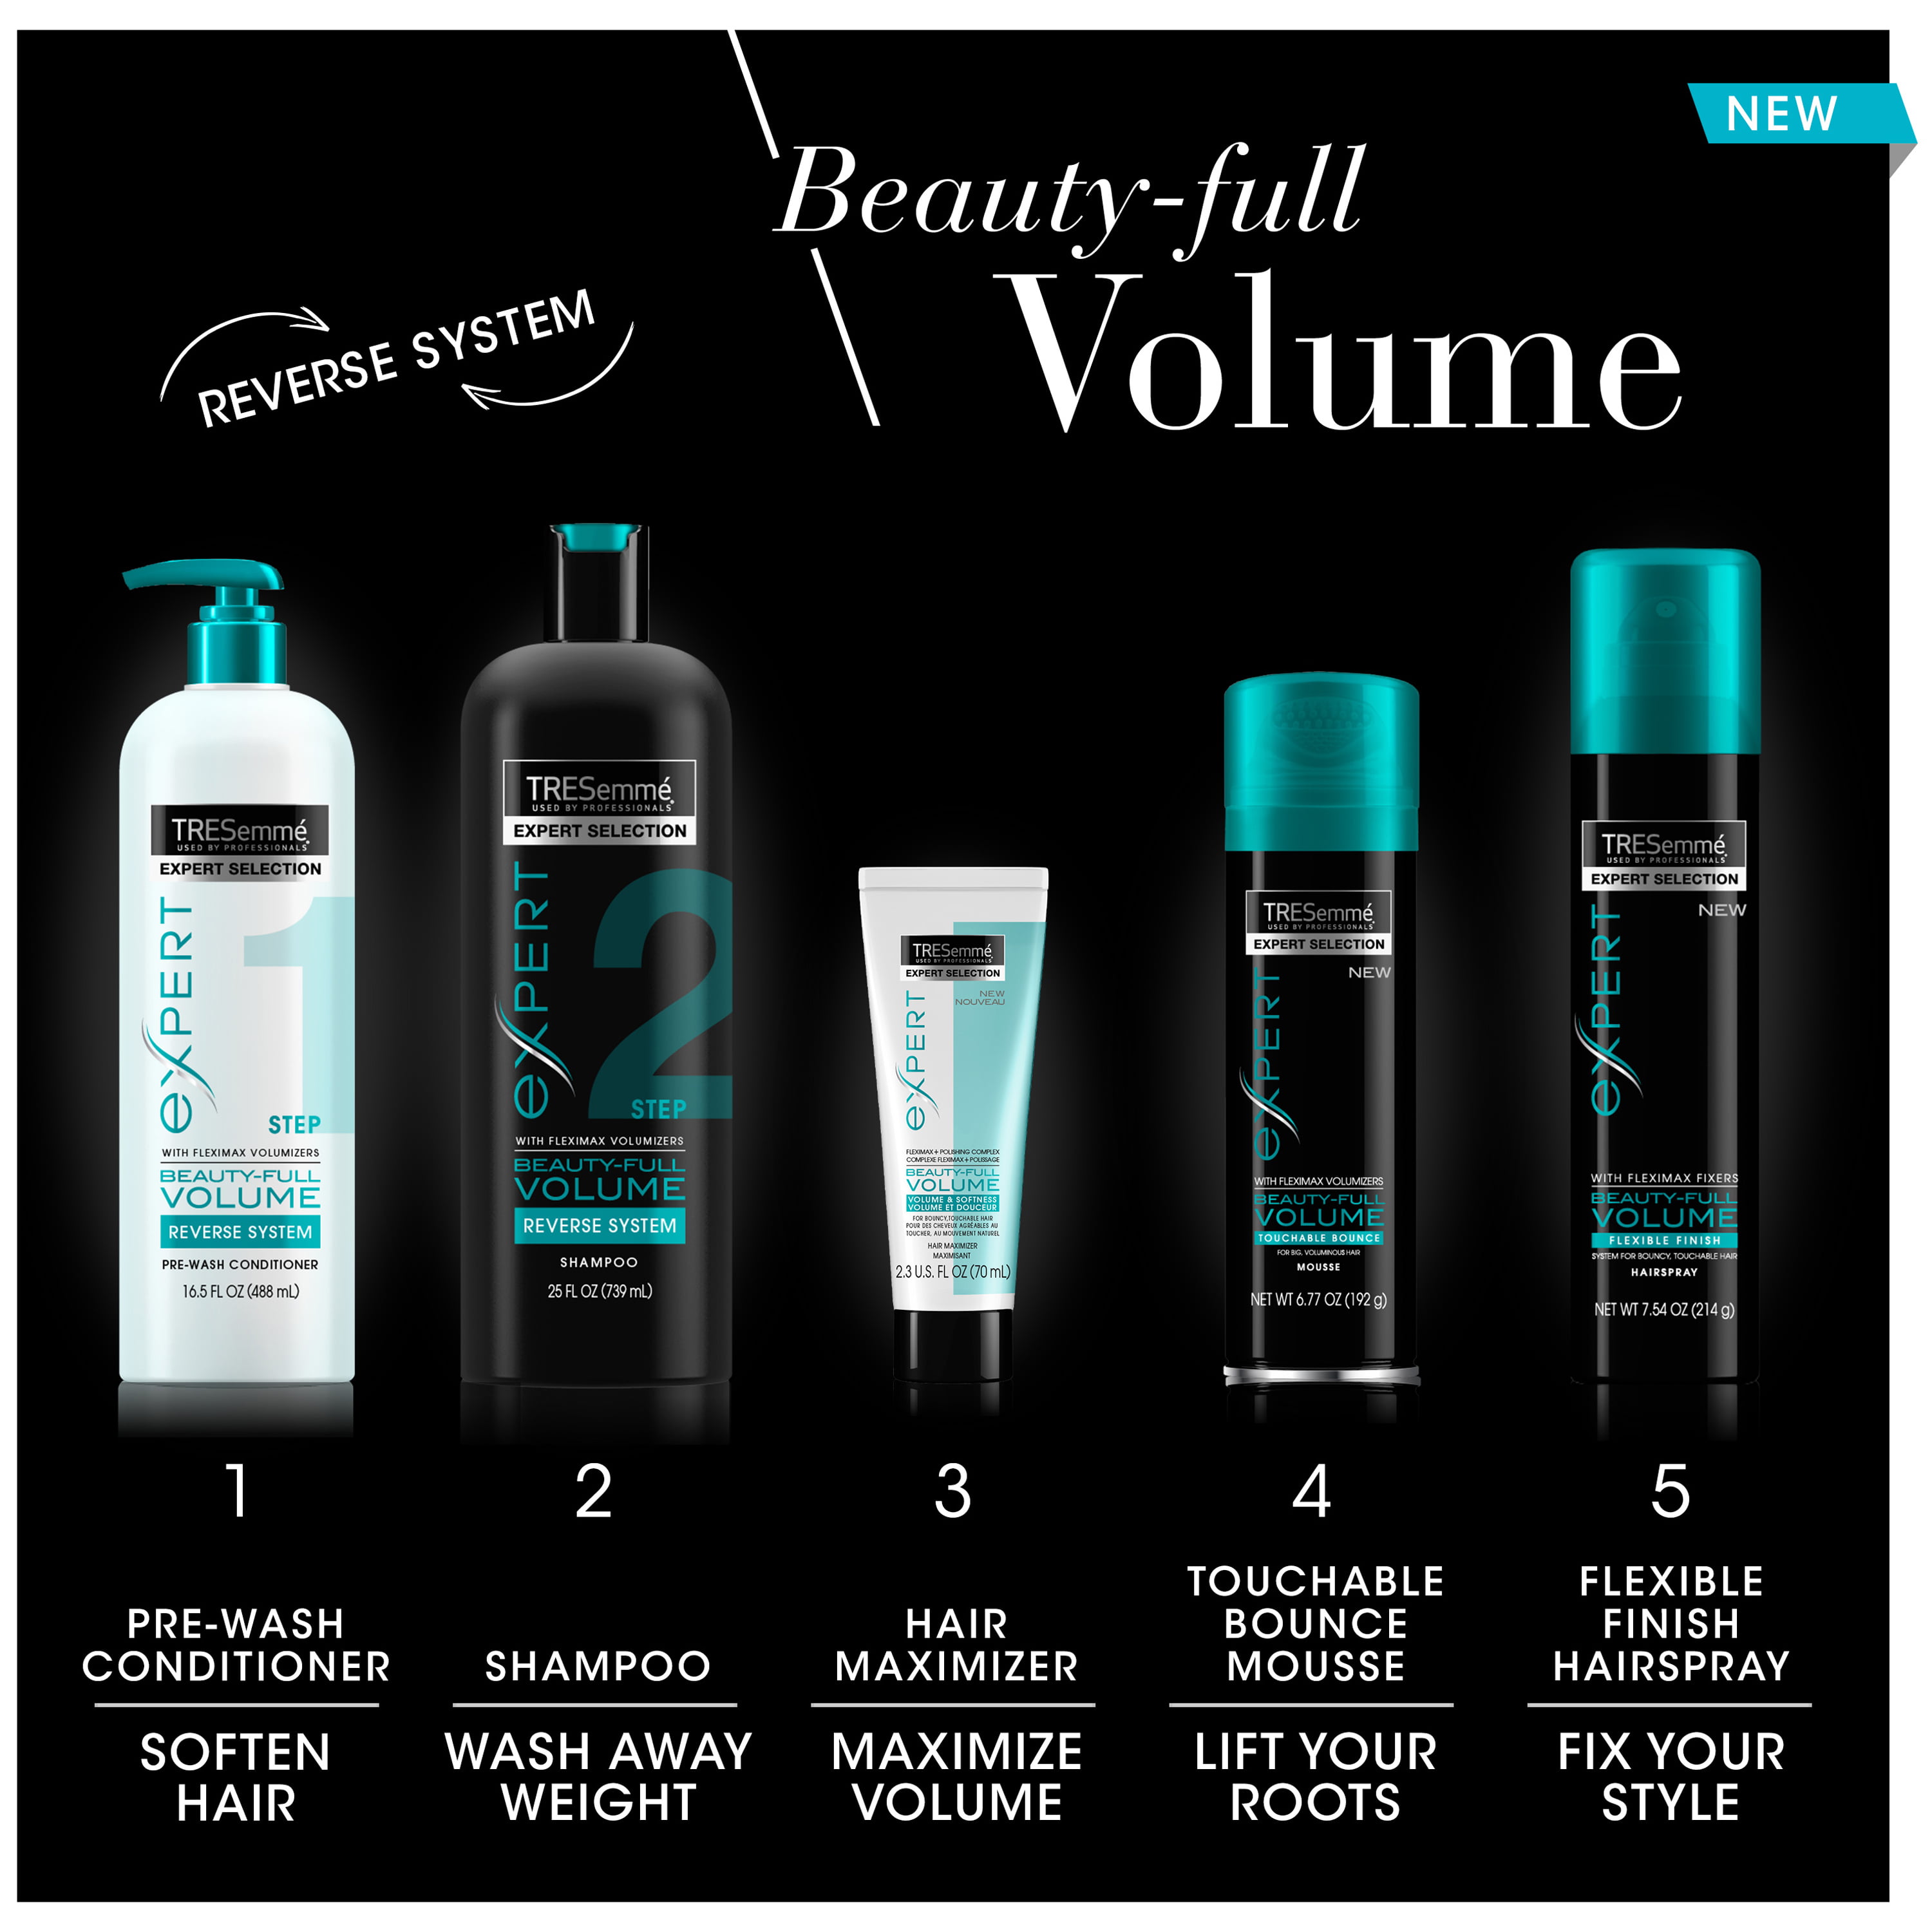 TRESEMME Beauty-Full Volume мусс. TRESEMME Beauty-Full Volume Shampoo Reverse System. Away для волос. Волиум фул сет.